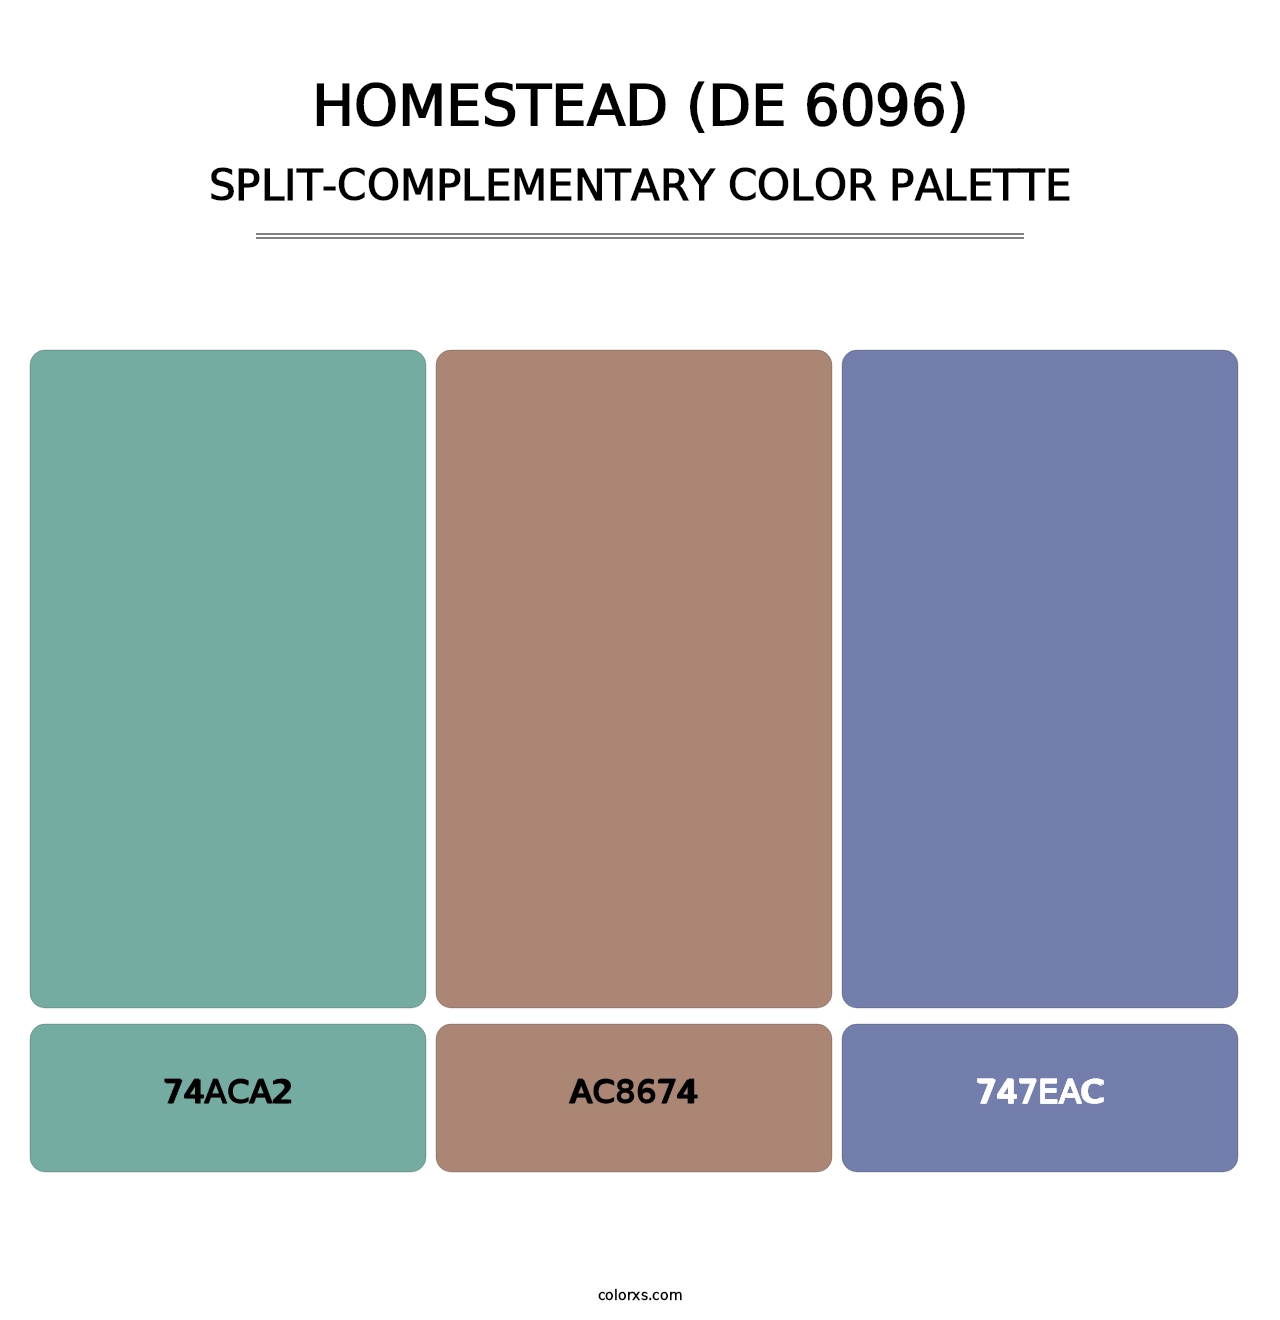 Homestead (DE 6096) - Split-Complementary Color Palette